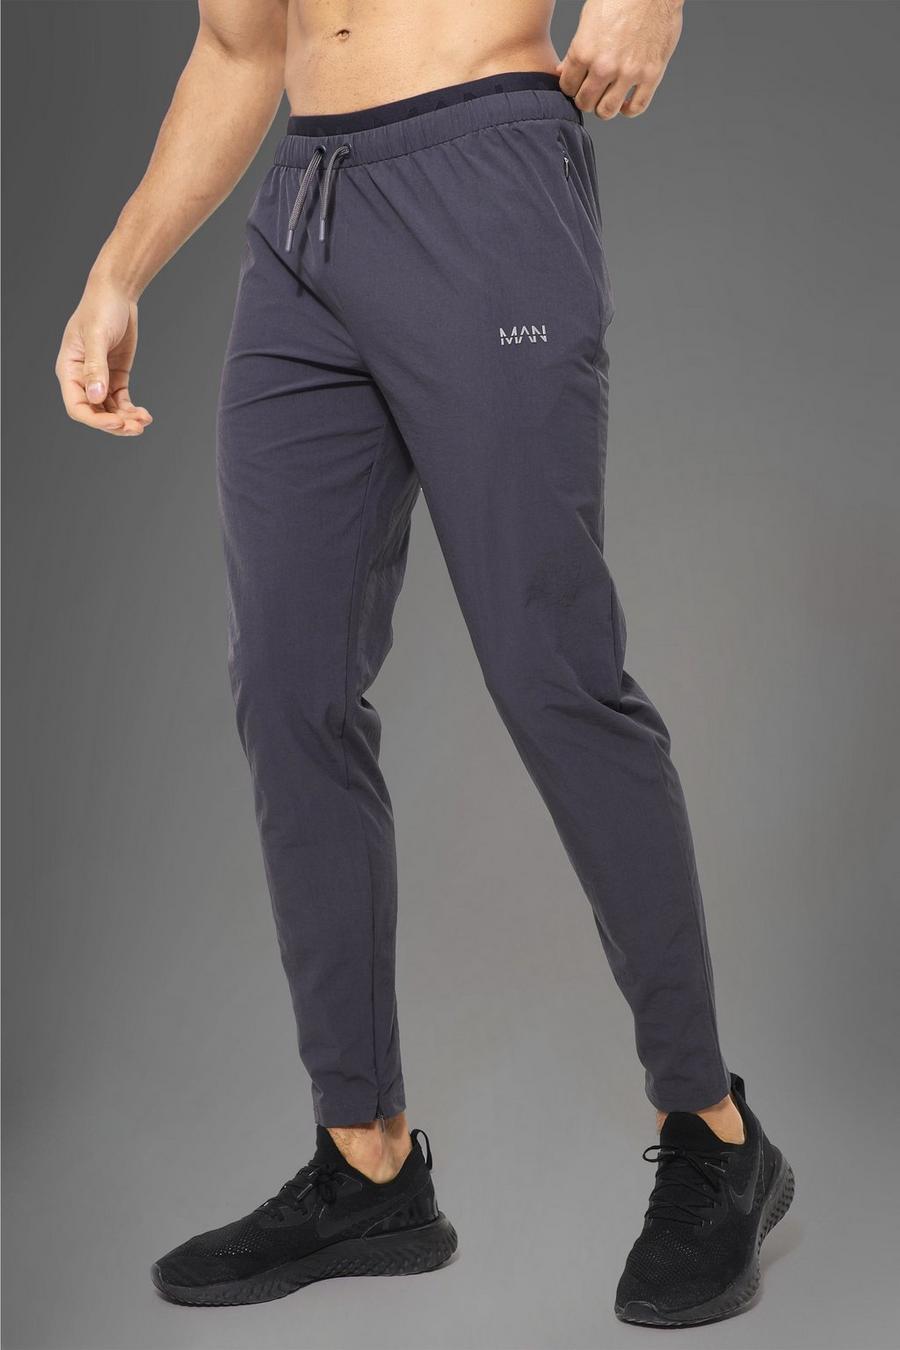 Pantaloni tuta Man Active Gym con dettagli in vita, Charcoal grigio image number 1